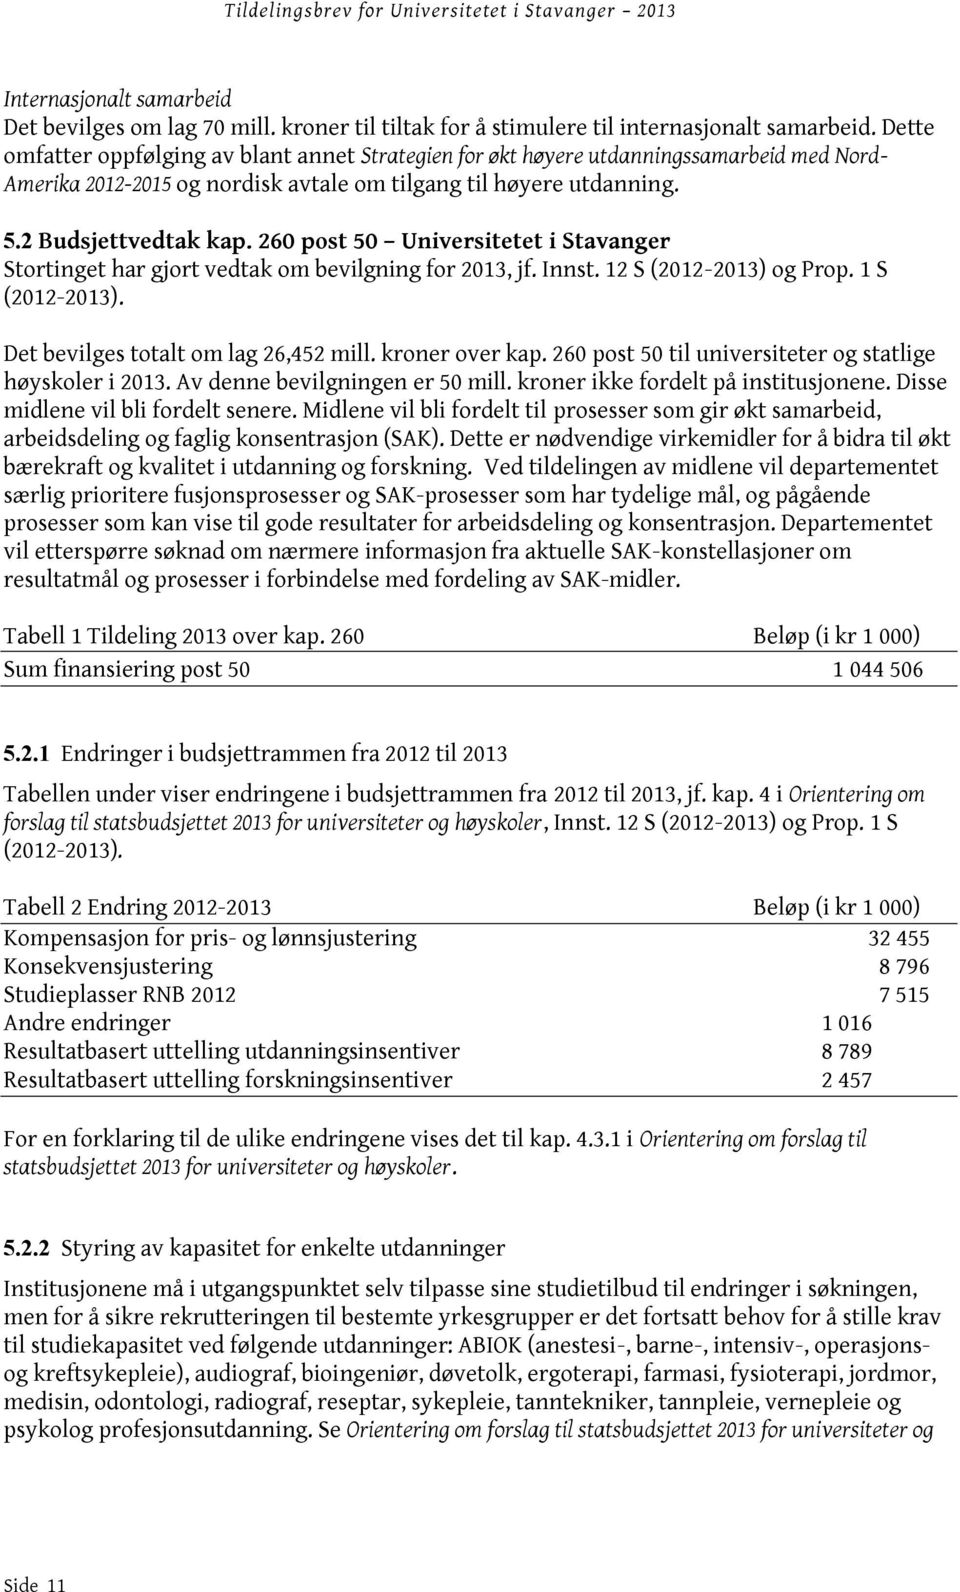 260 post 50 Universitetet i Stavanger Stortinget har gjort vedtak om bevilgning for 2013, jf. Innst. 12 S (2012-2013) og Prop. 1 S (2012-2013). Det bevilges totalt om lag 26,452 mill. kroner over kap.